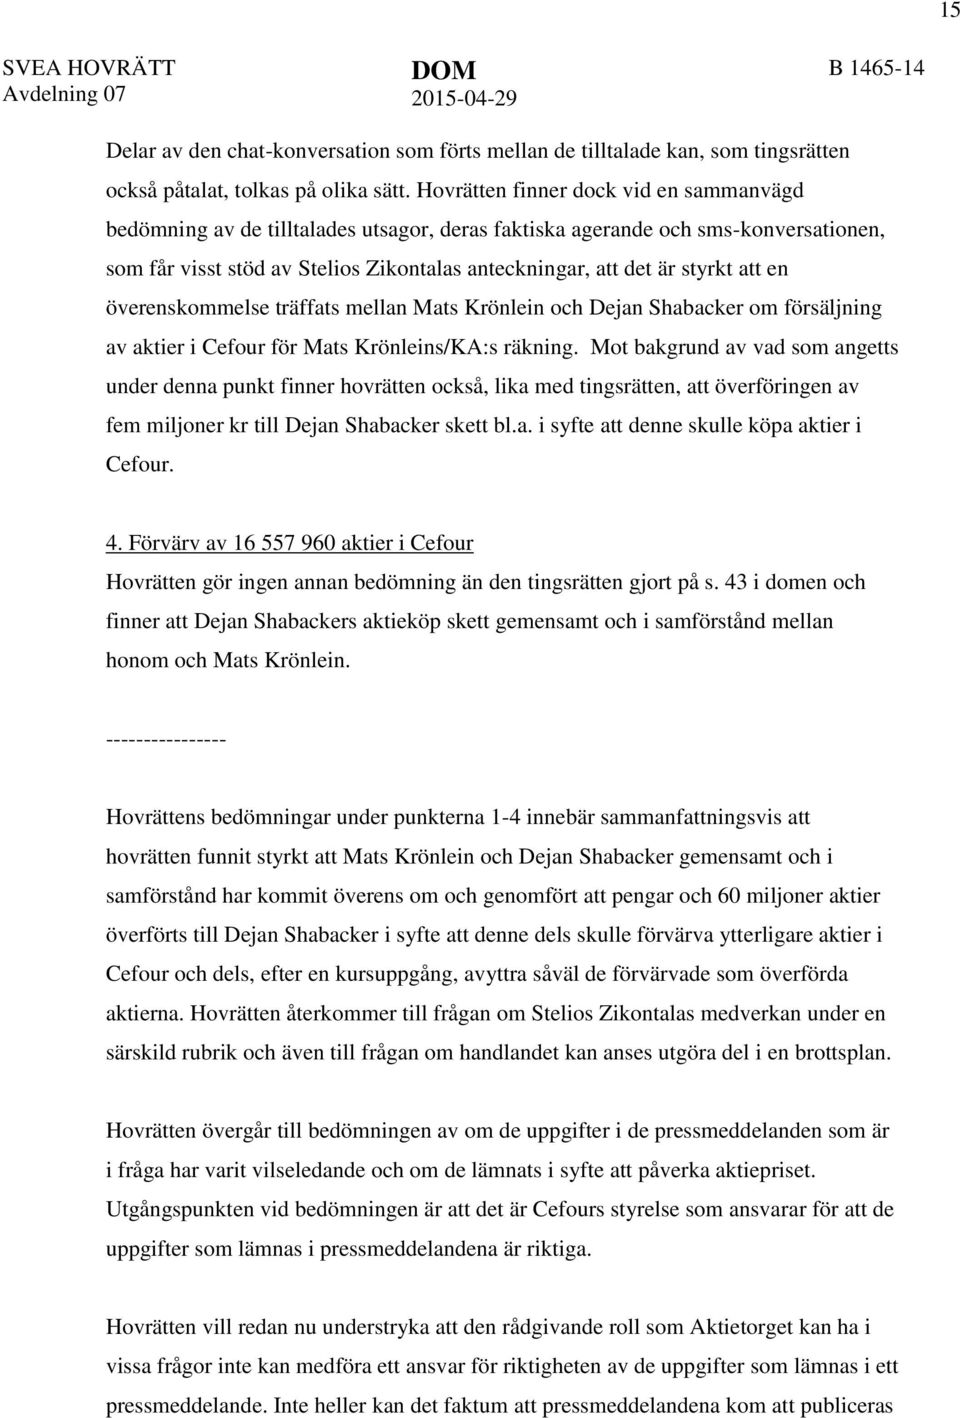 att en överenskommelse träffats mellan Mats Krönlein och Dejan Shabacker om försäljning av aktier i Cefour för Mats Krönleins/KA:s räkning.